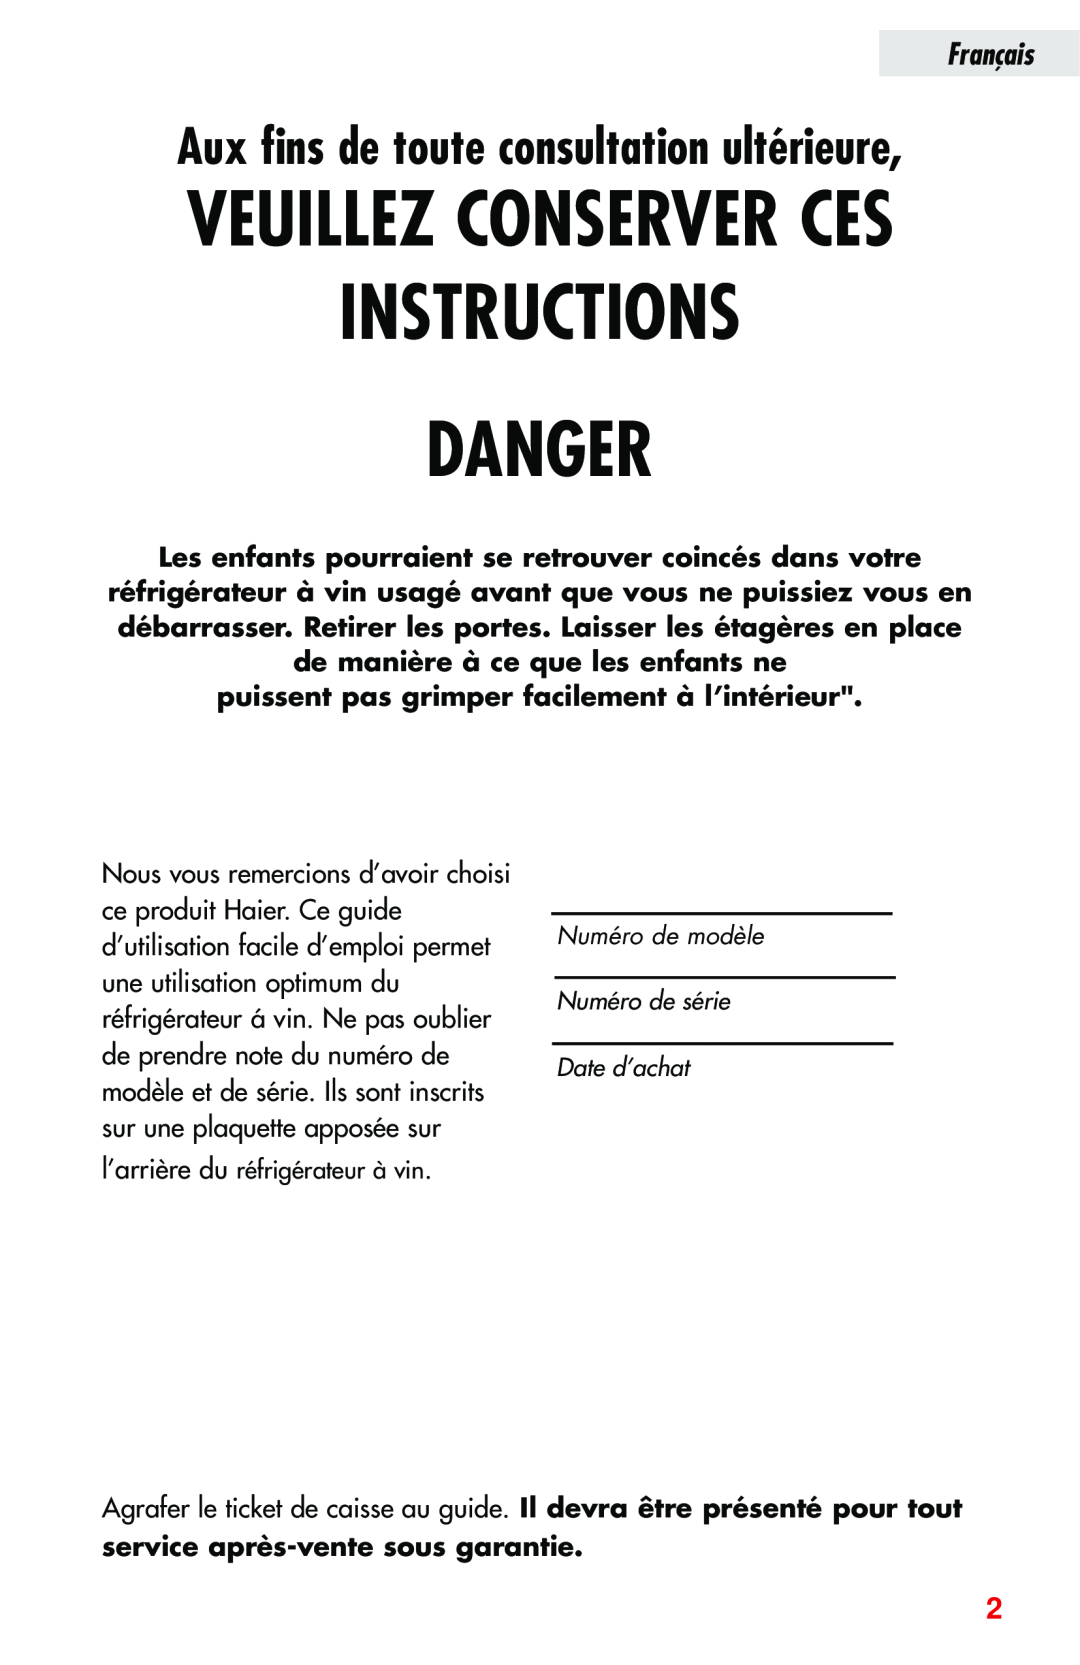 Haier JC-82GB manual Instructions Danger, Veuillez Conserver Ces, Aux fins de toute consultation ultérieure, Français 